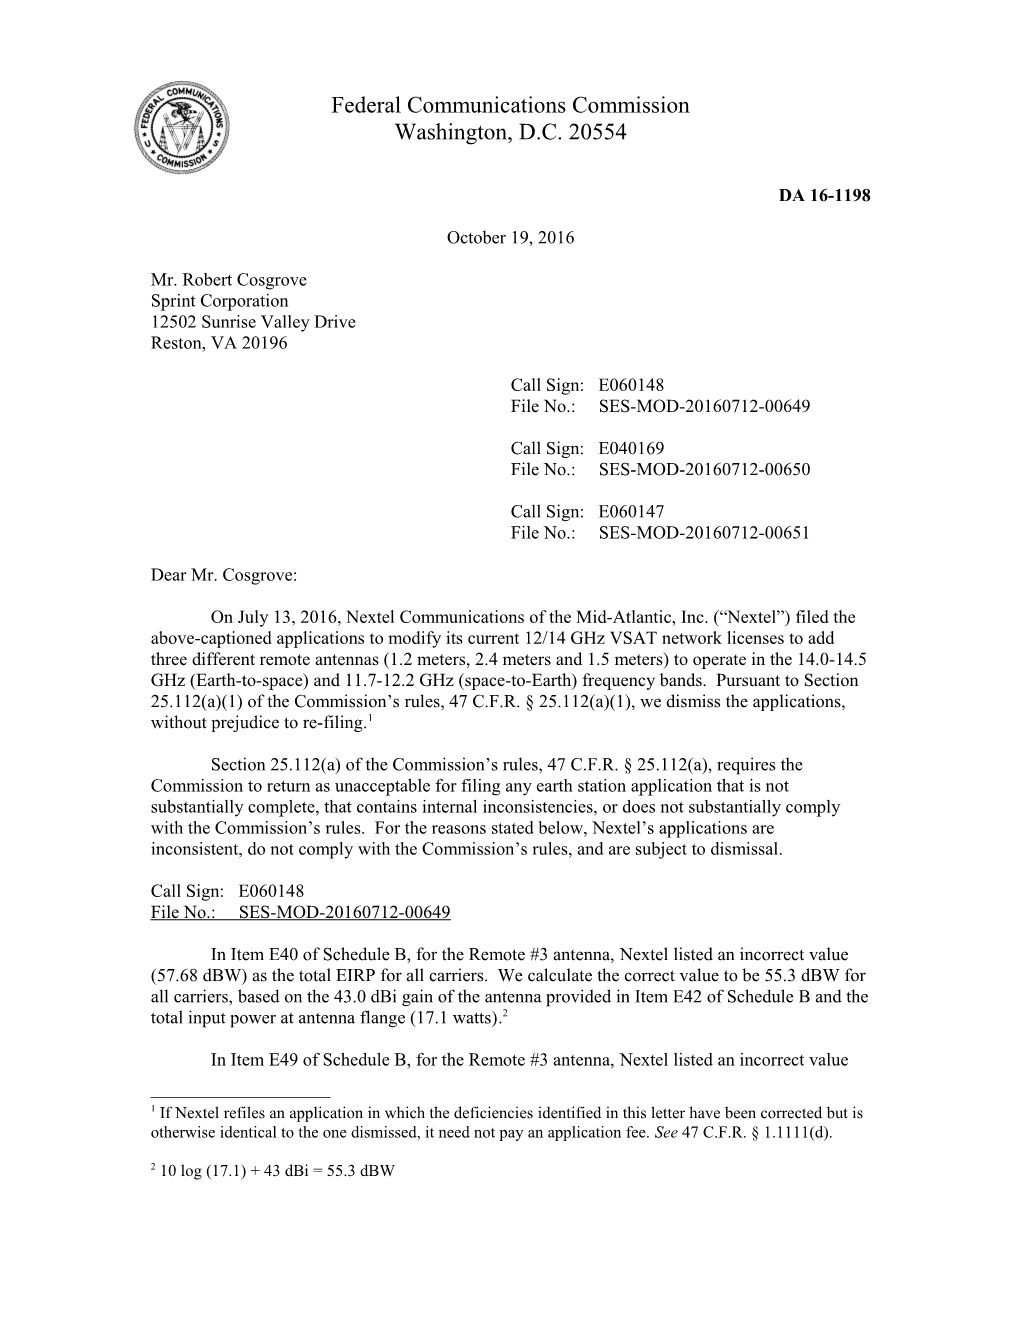 Federal Communications Commission DA 16-1198